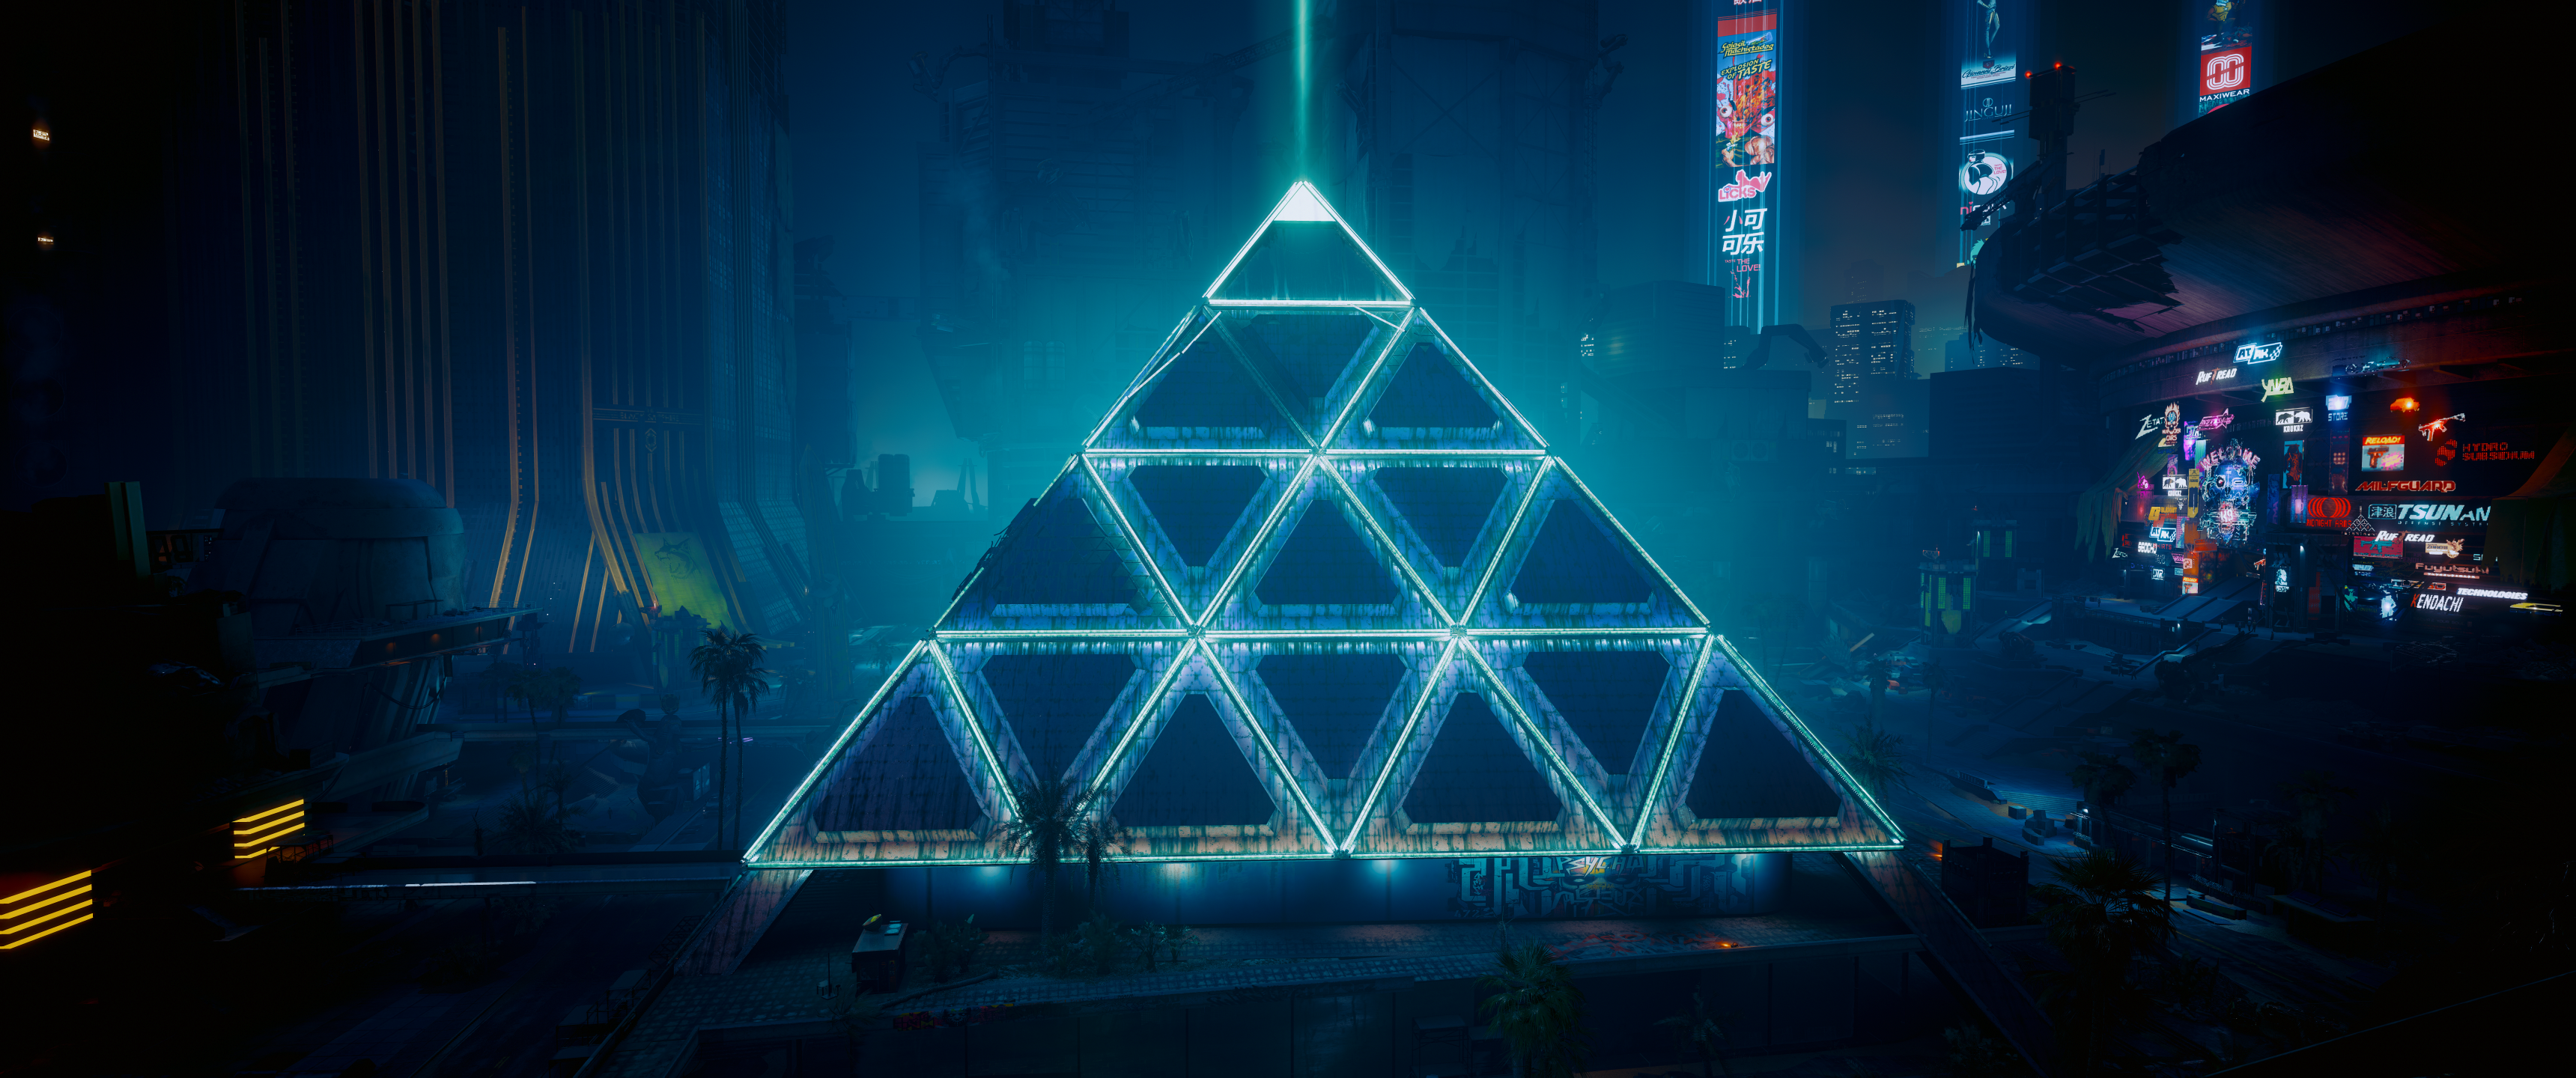 Cyberpunk Cyberpunk 2077 Pyramid Cyberpunk 2077 Phantom Liberty 3440x1440